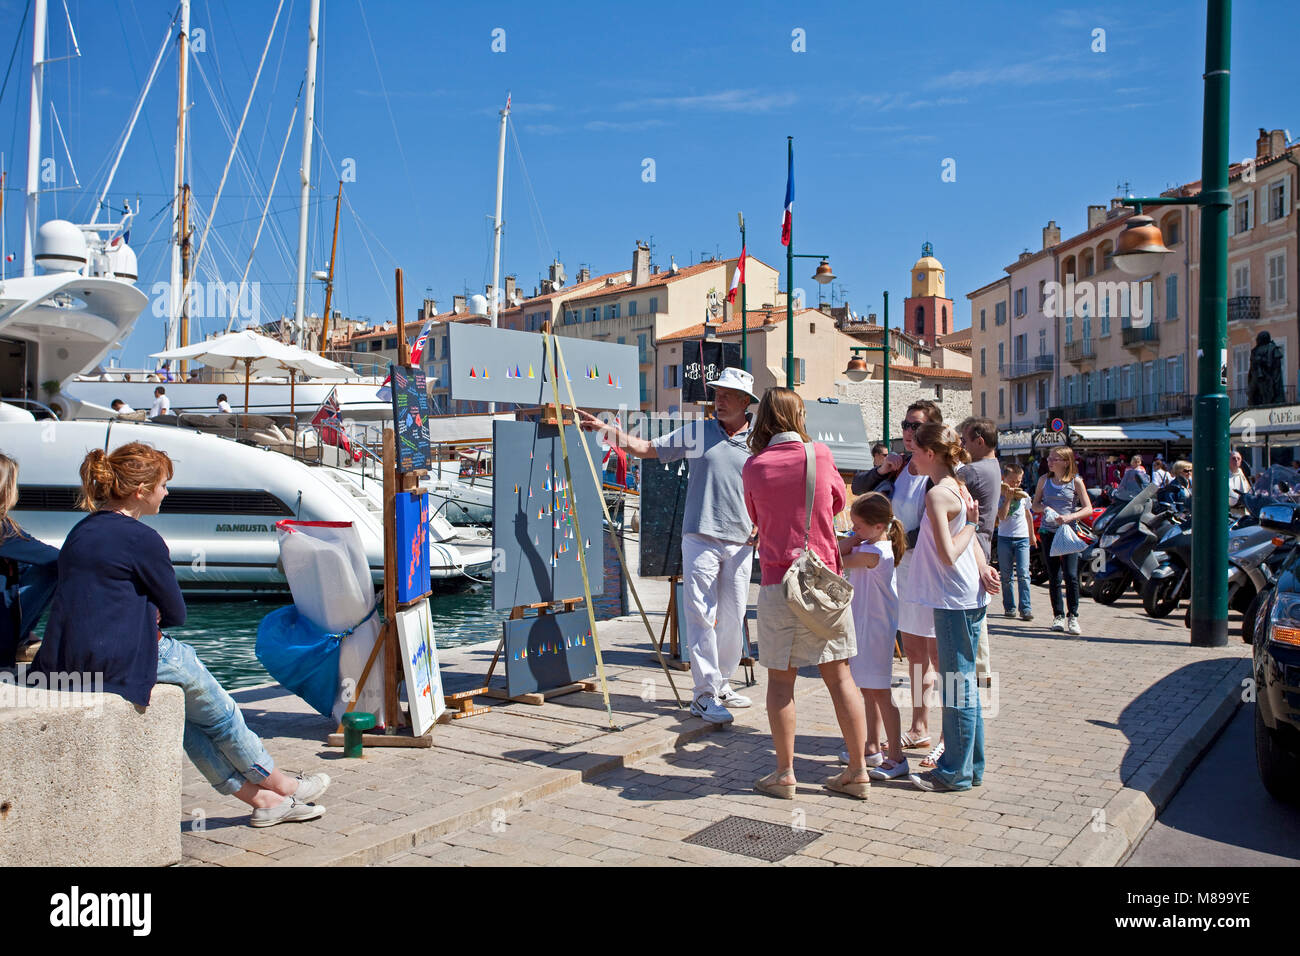 Montre peintre ses toiles à la promenade promenade dans le port de Saint-Tropez, Côte d'Azur, France Sud, Côte d'Azur, France, Europe Banque D'Images